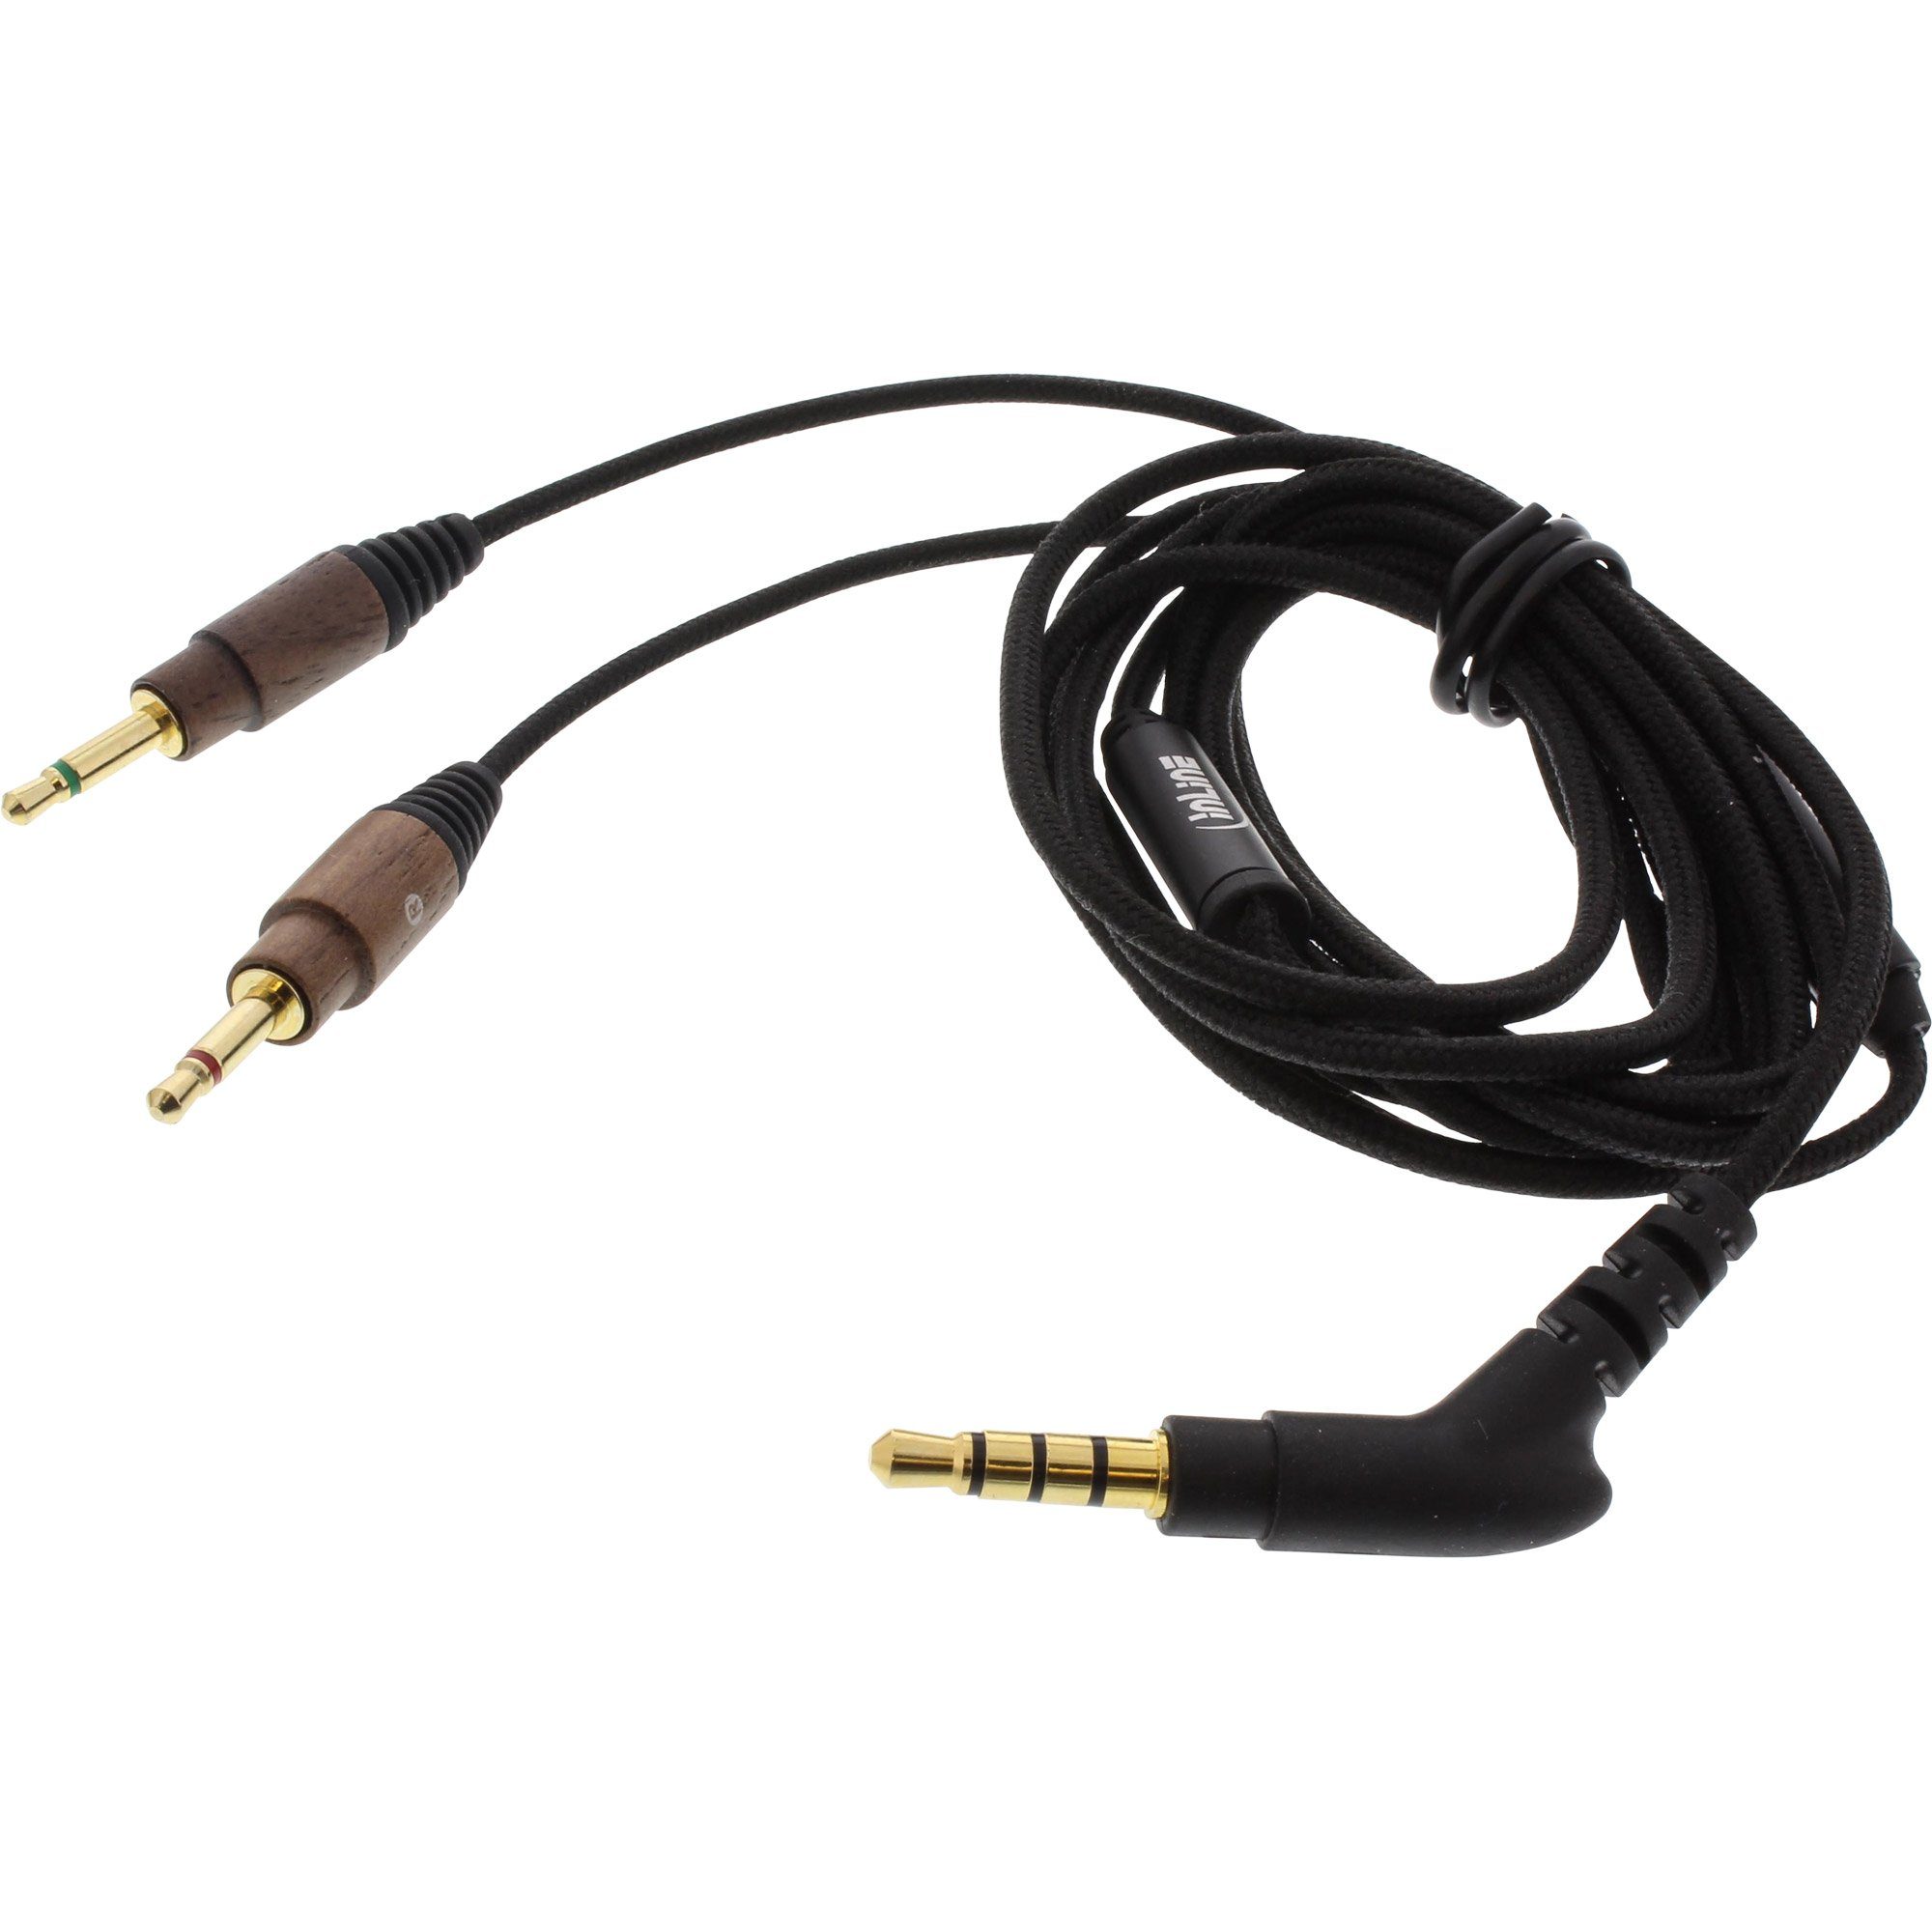 On-Ear-Kopfhörer Inline Walnuß On-Ear mit Headset Funktionstaste, Kabelmikrofon und